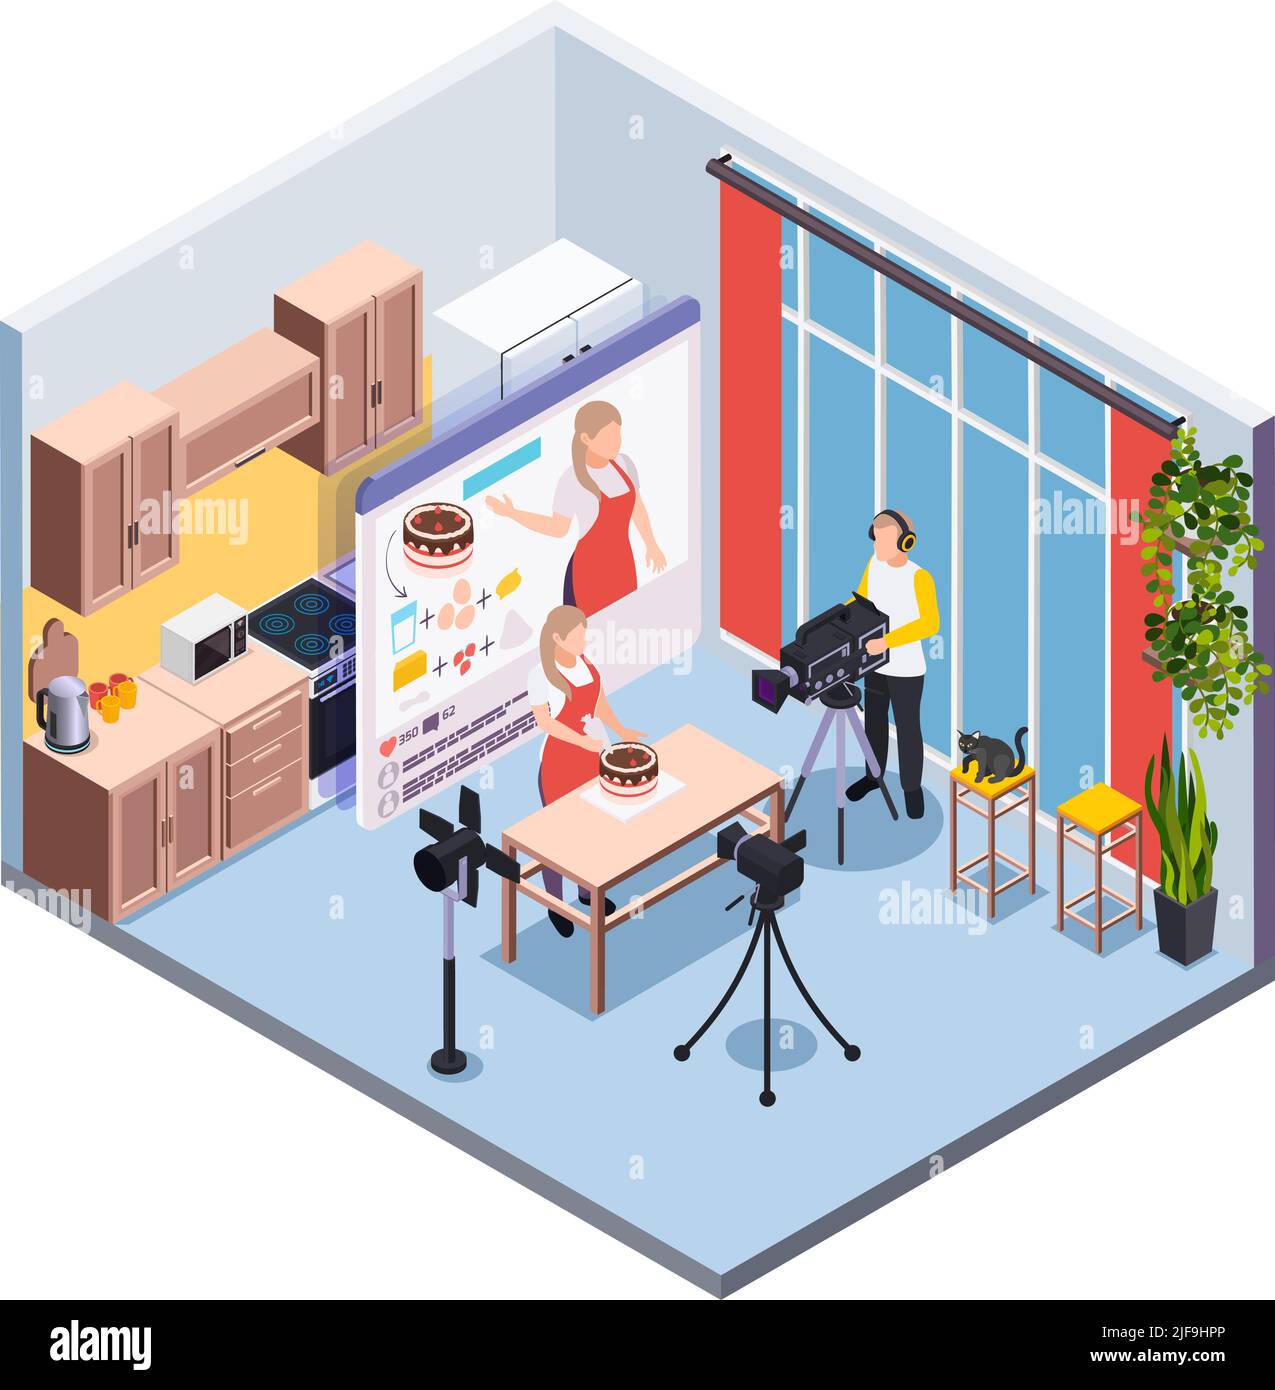 Blogging isometrische Zusammensetzung mit Bediener und Konditor Filmen Kochen Show in Küche Innenraum Vektor-Illustration Stock Vektor